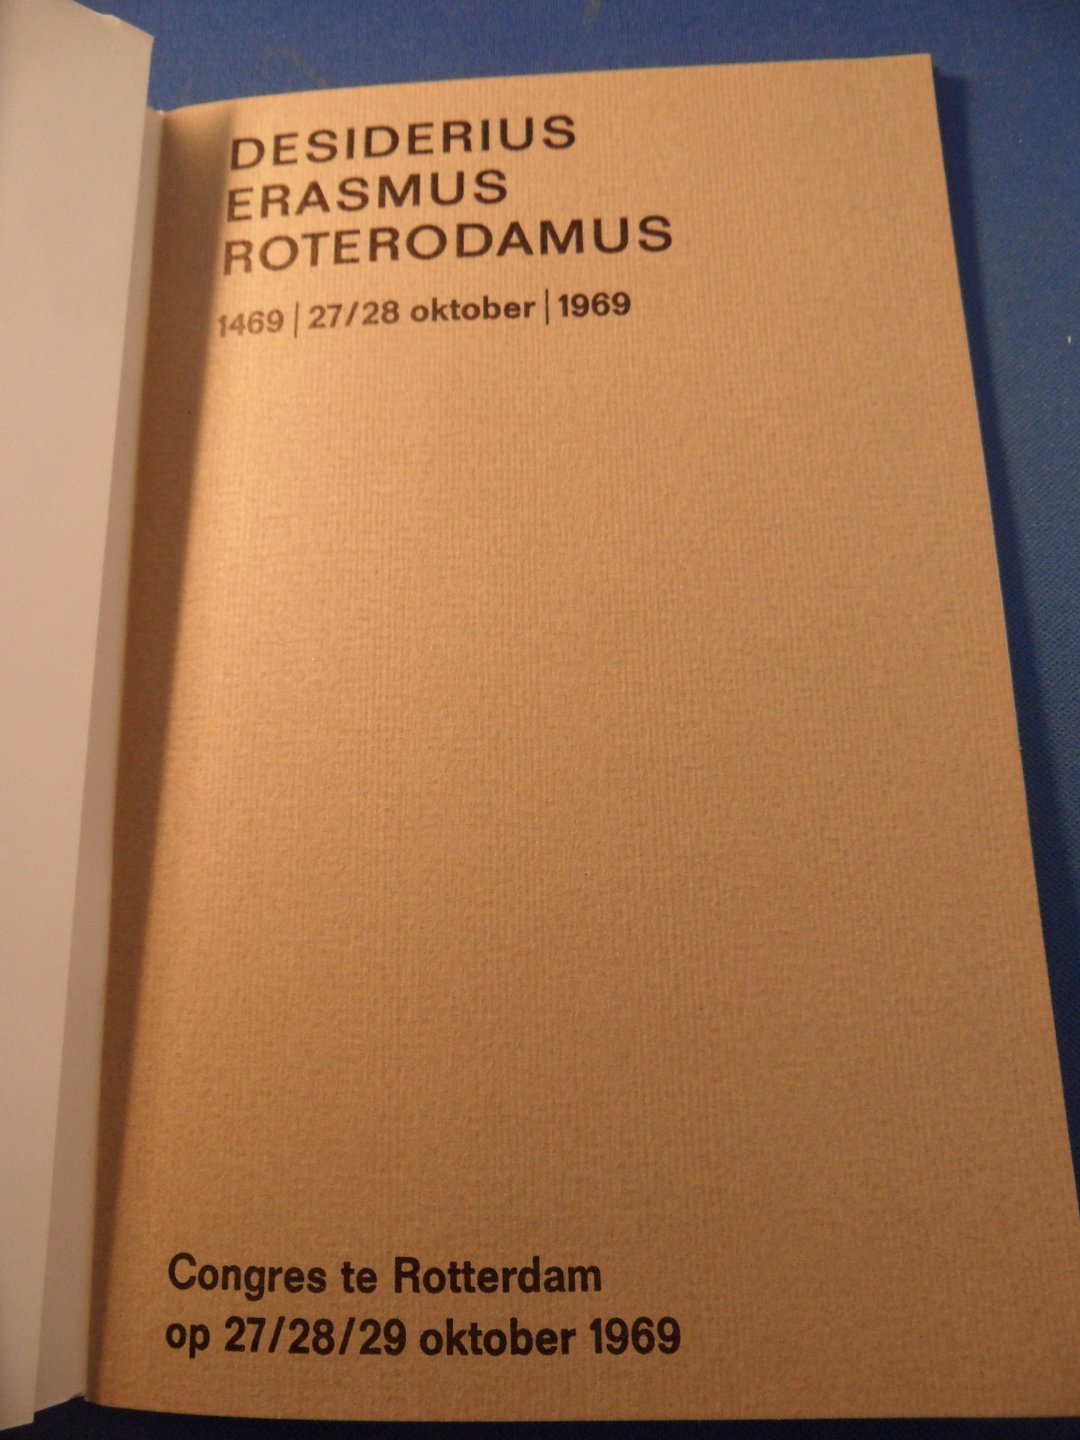  - Desiderus Erasmus Roterodamus. 1469 - 27/28 oktober - 1969